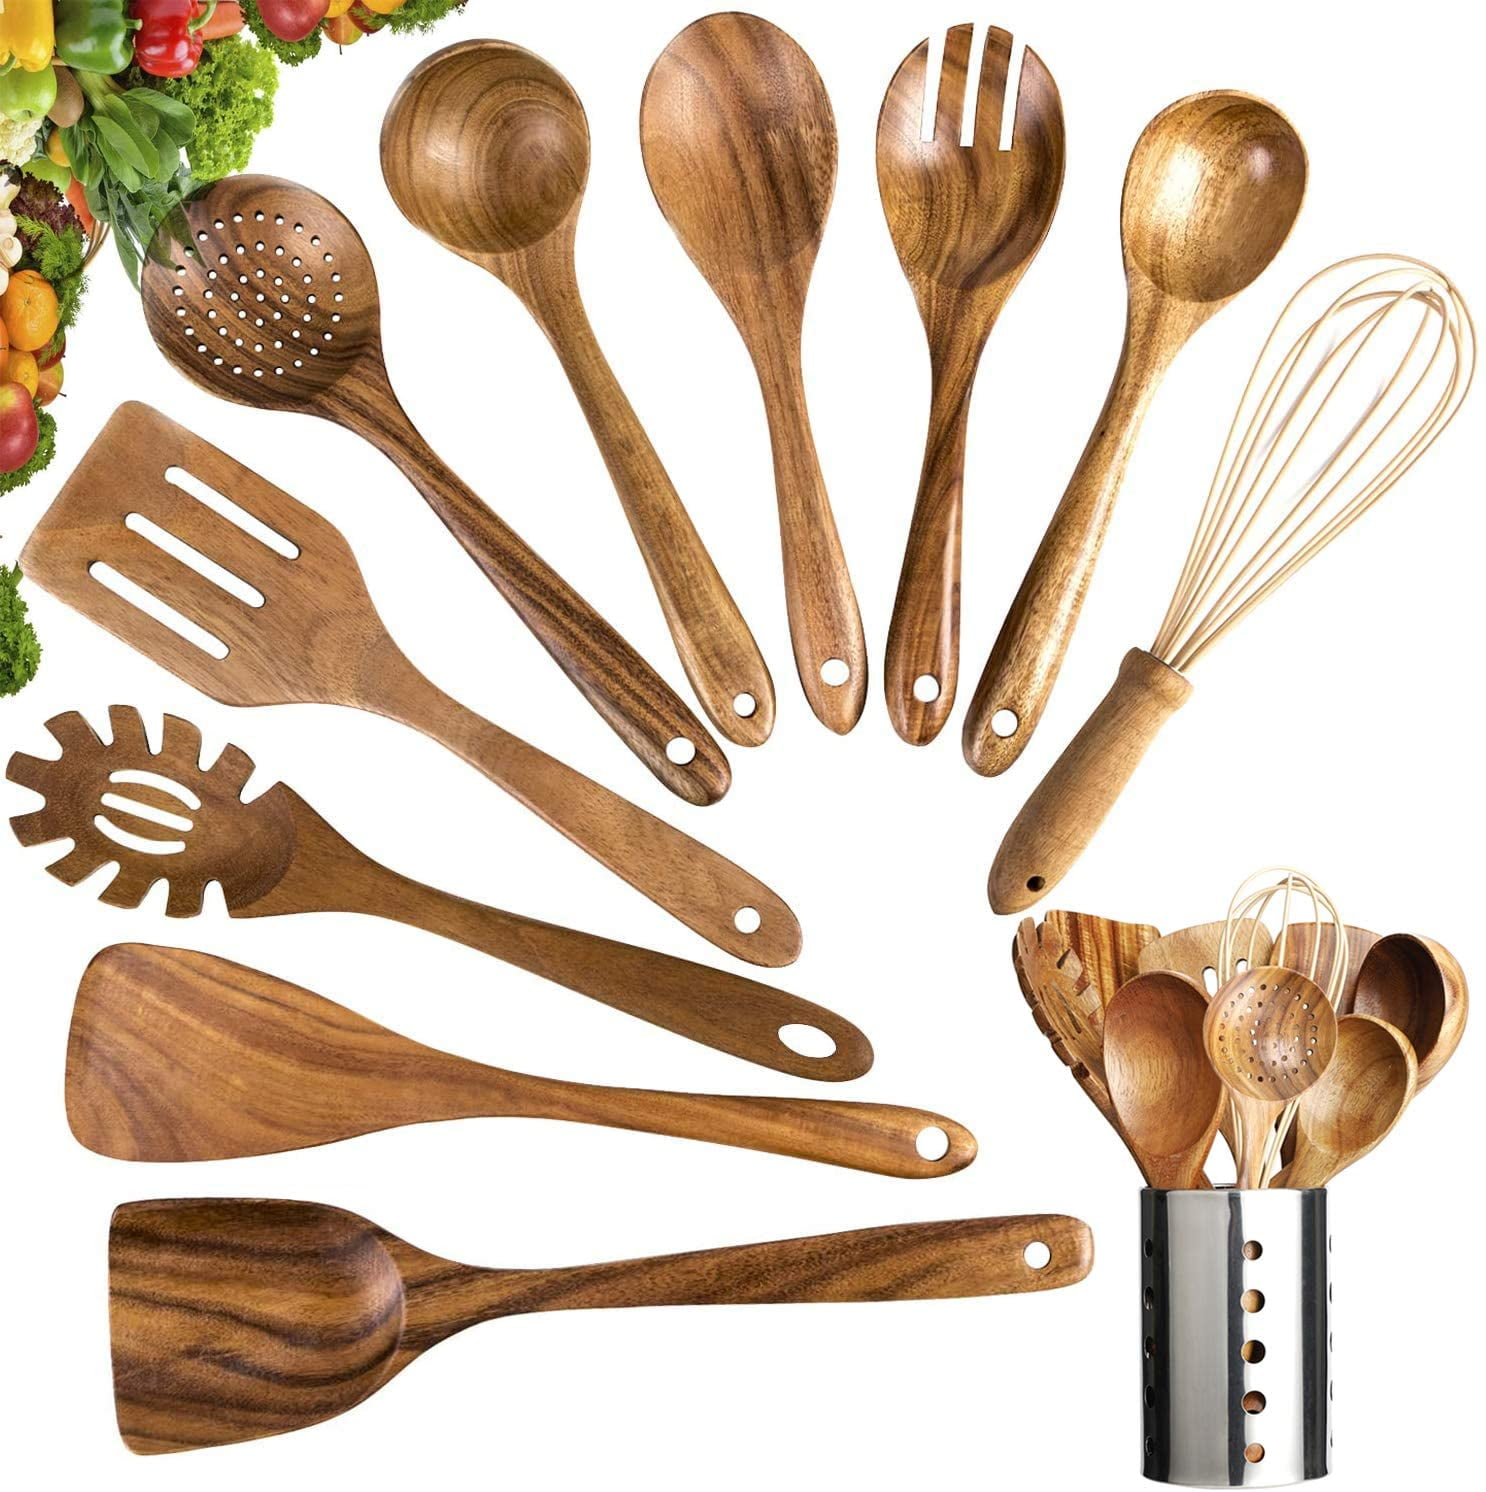 Wooden Spoons Cooking Utensils Set Kitchen Nonstick Cookware Teak Wood 5 Pcs 